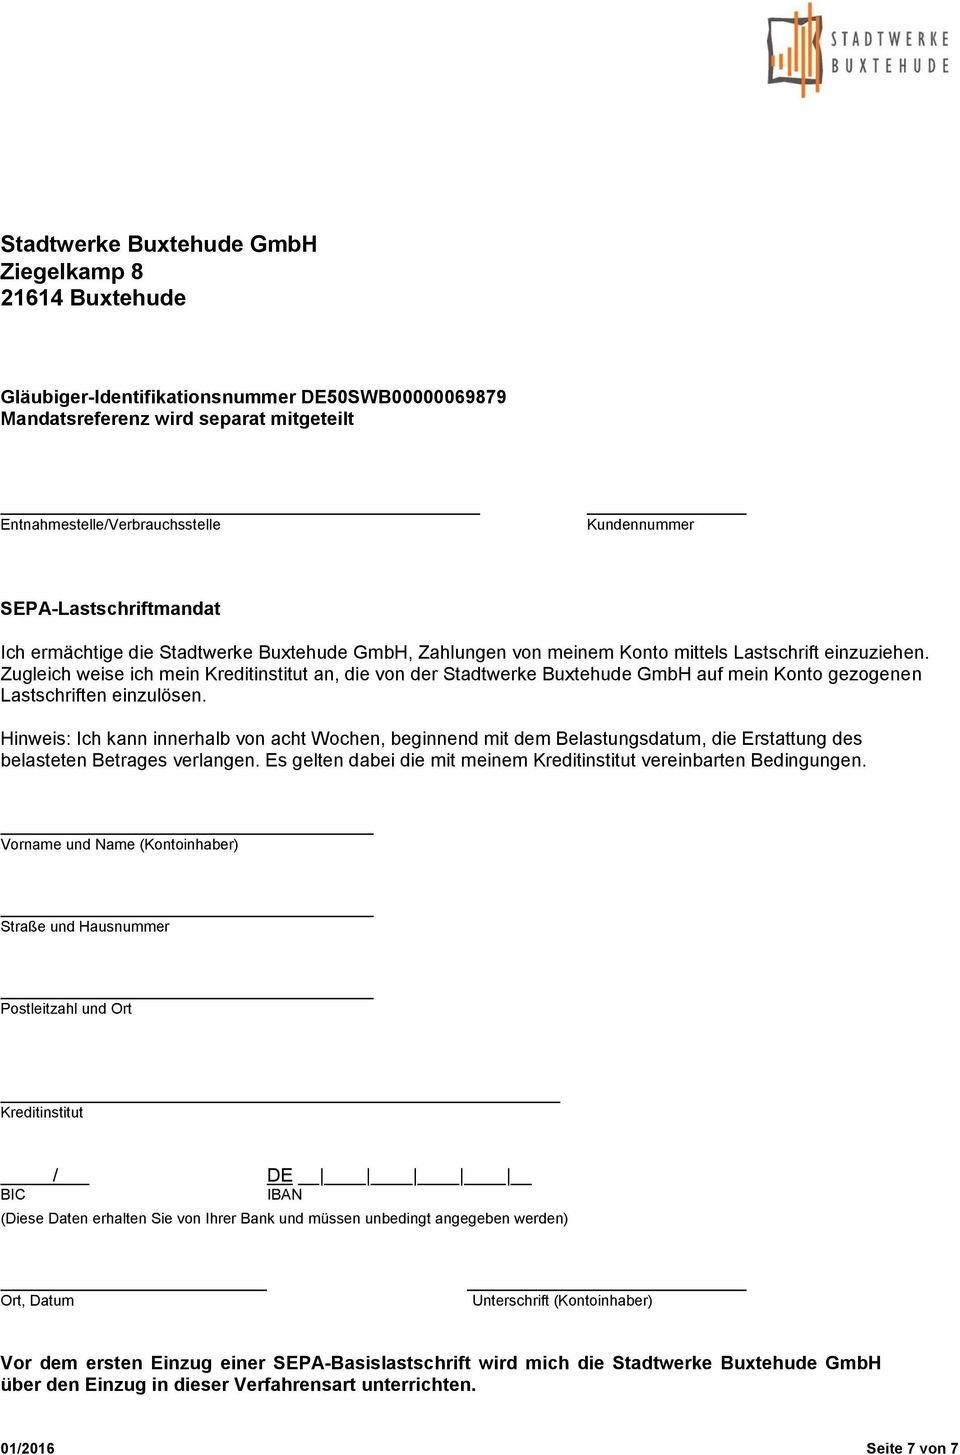 Zugleich weise ich mein Kreditinstitut an, die von der Stadtwerke Buxtehude GmbH auf mein Konto gezogenen Lastschriften einzulösen.